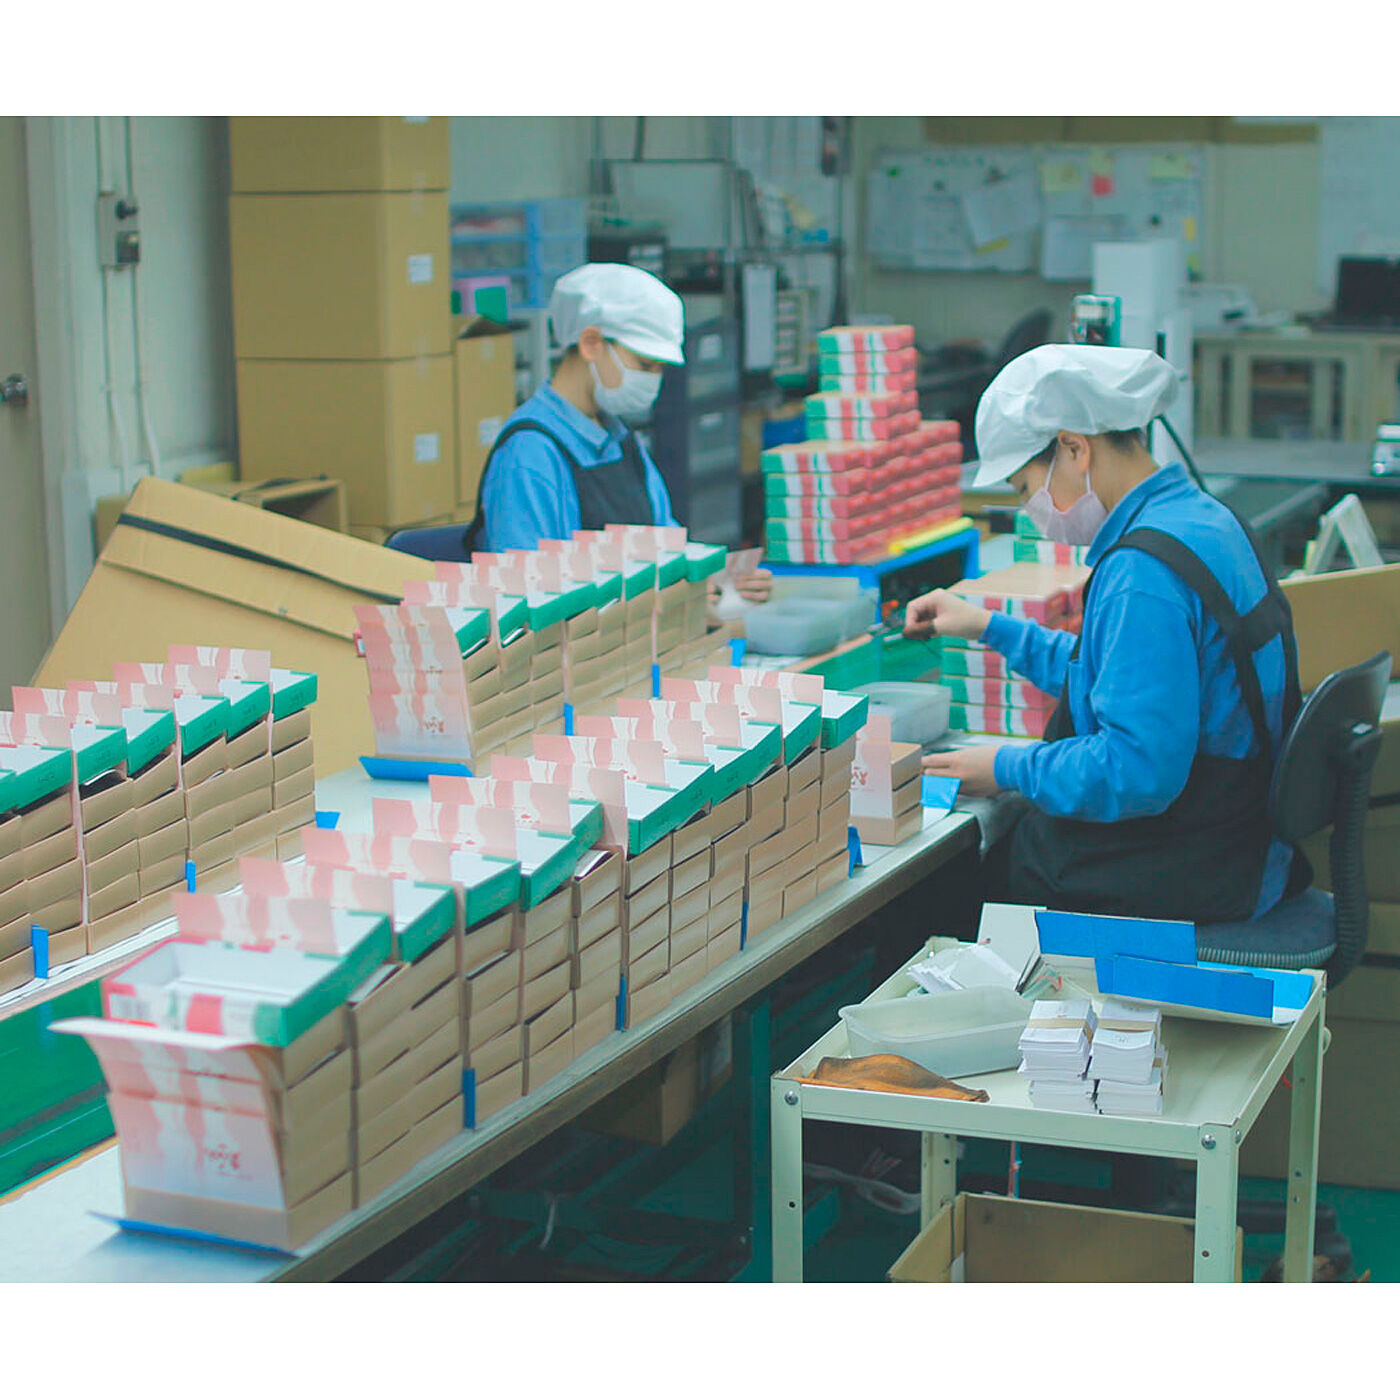 フェリシモの雑貨 Kraso|KAWAII COMPANY　淡路島で128年の技術が香る ネオクラシックな糸のお香の会|工場見学の様子は、KAWAII COMPANYのnoteでご紹介しています。ぜひご覧ください♪